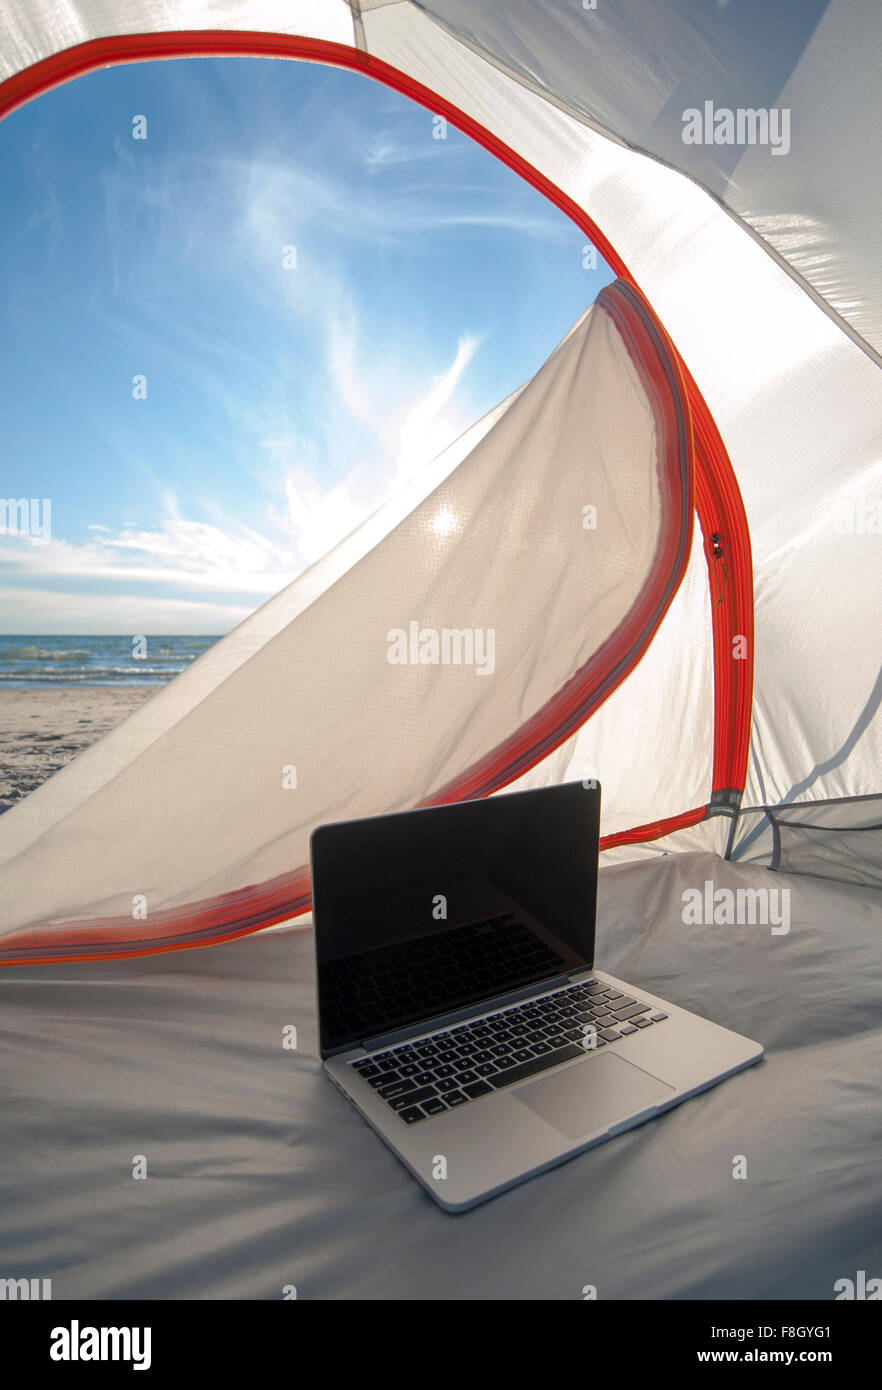 Laptop in tenda da campeggio sulla spiaggia Foto Stock